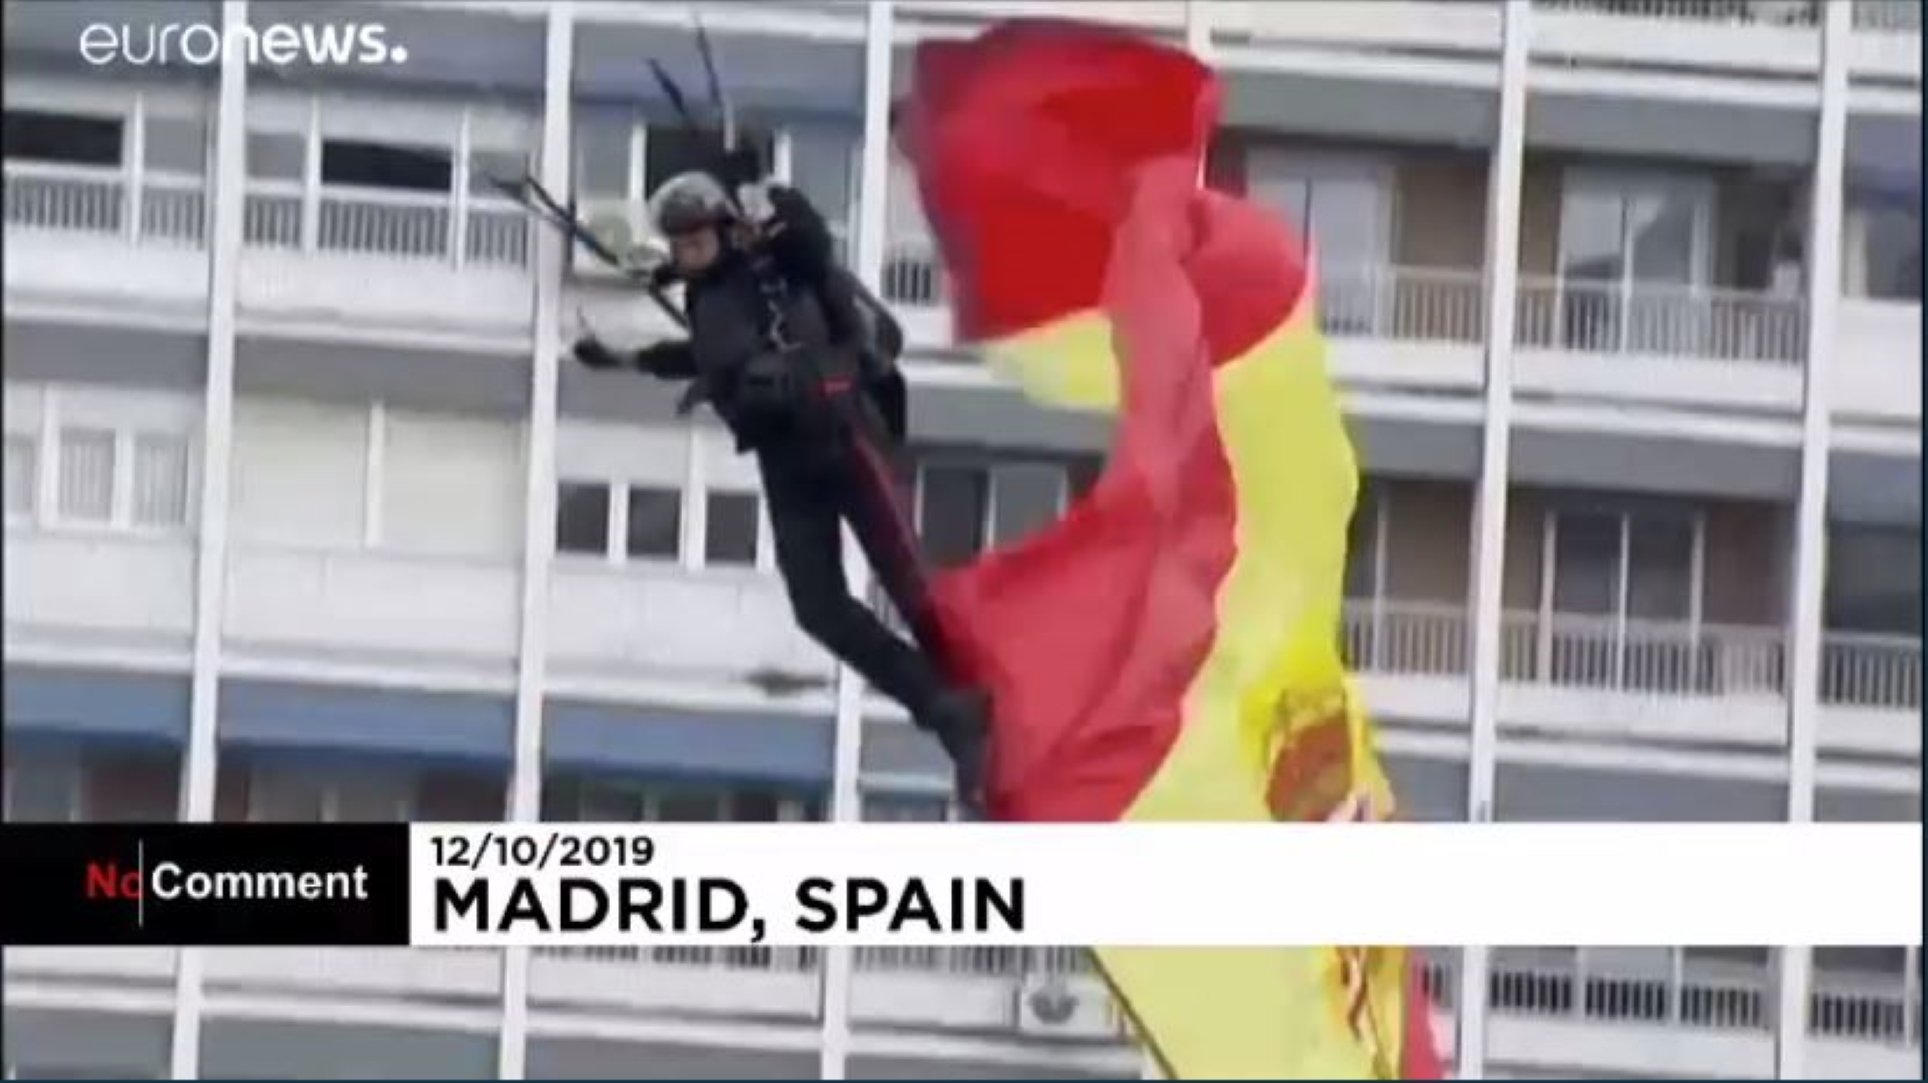 Eco internacional del fiasco del paracaidista español y la farola